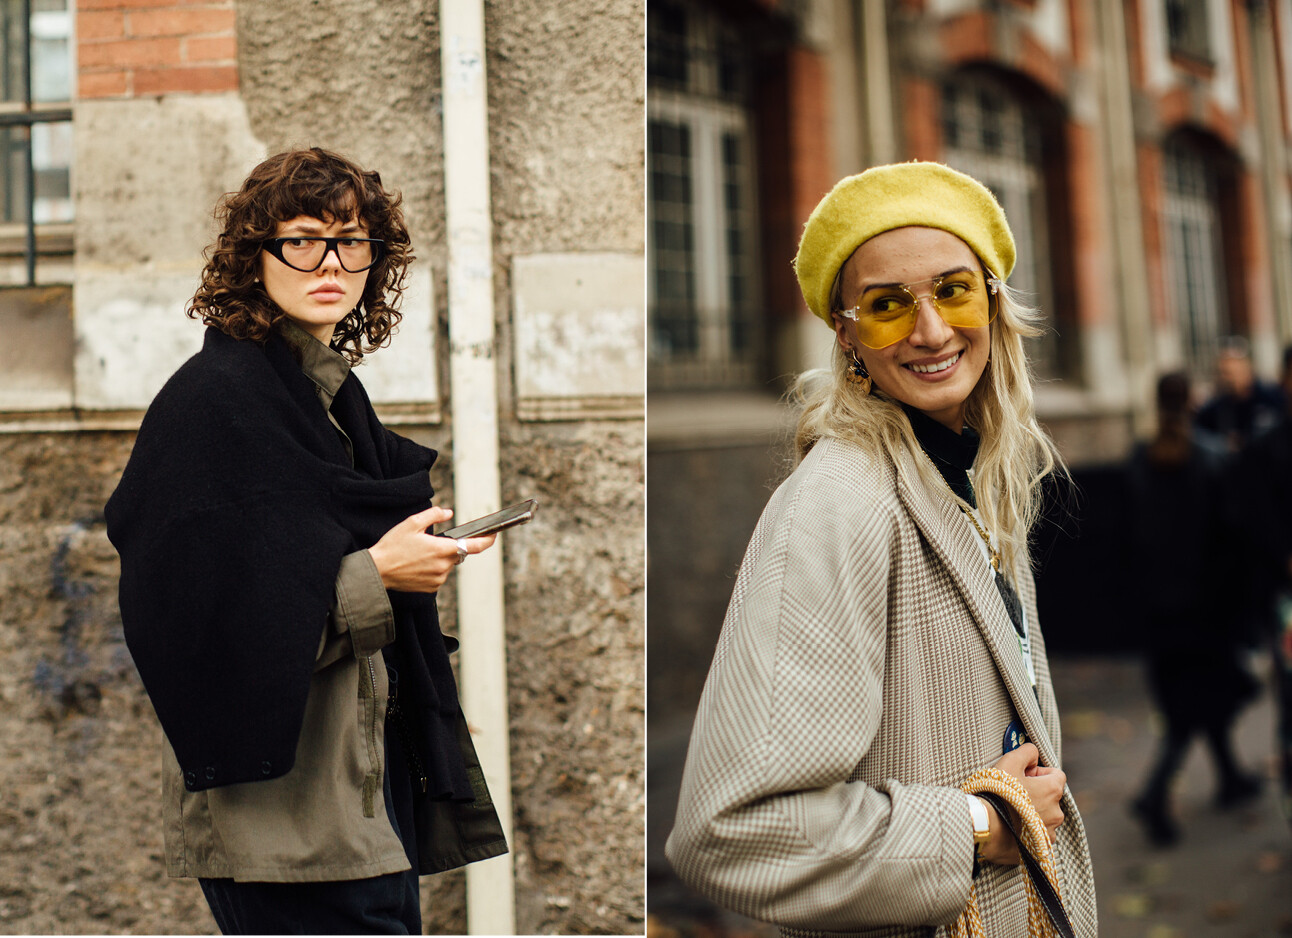 vrouwen staan op straat met zonnebrillen op